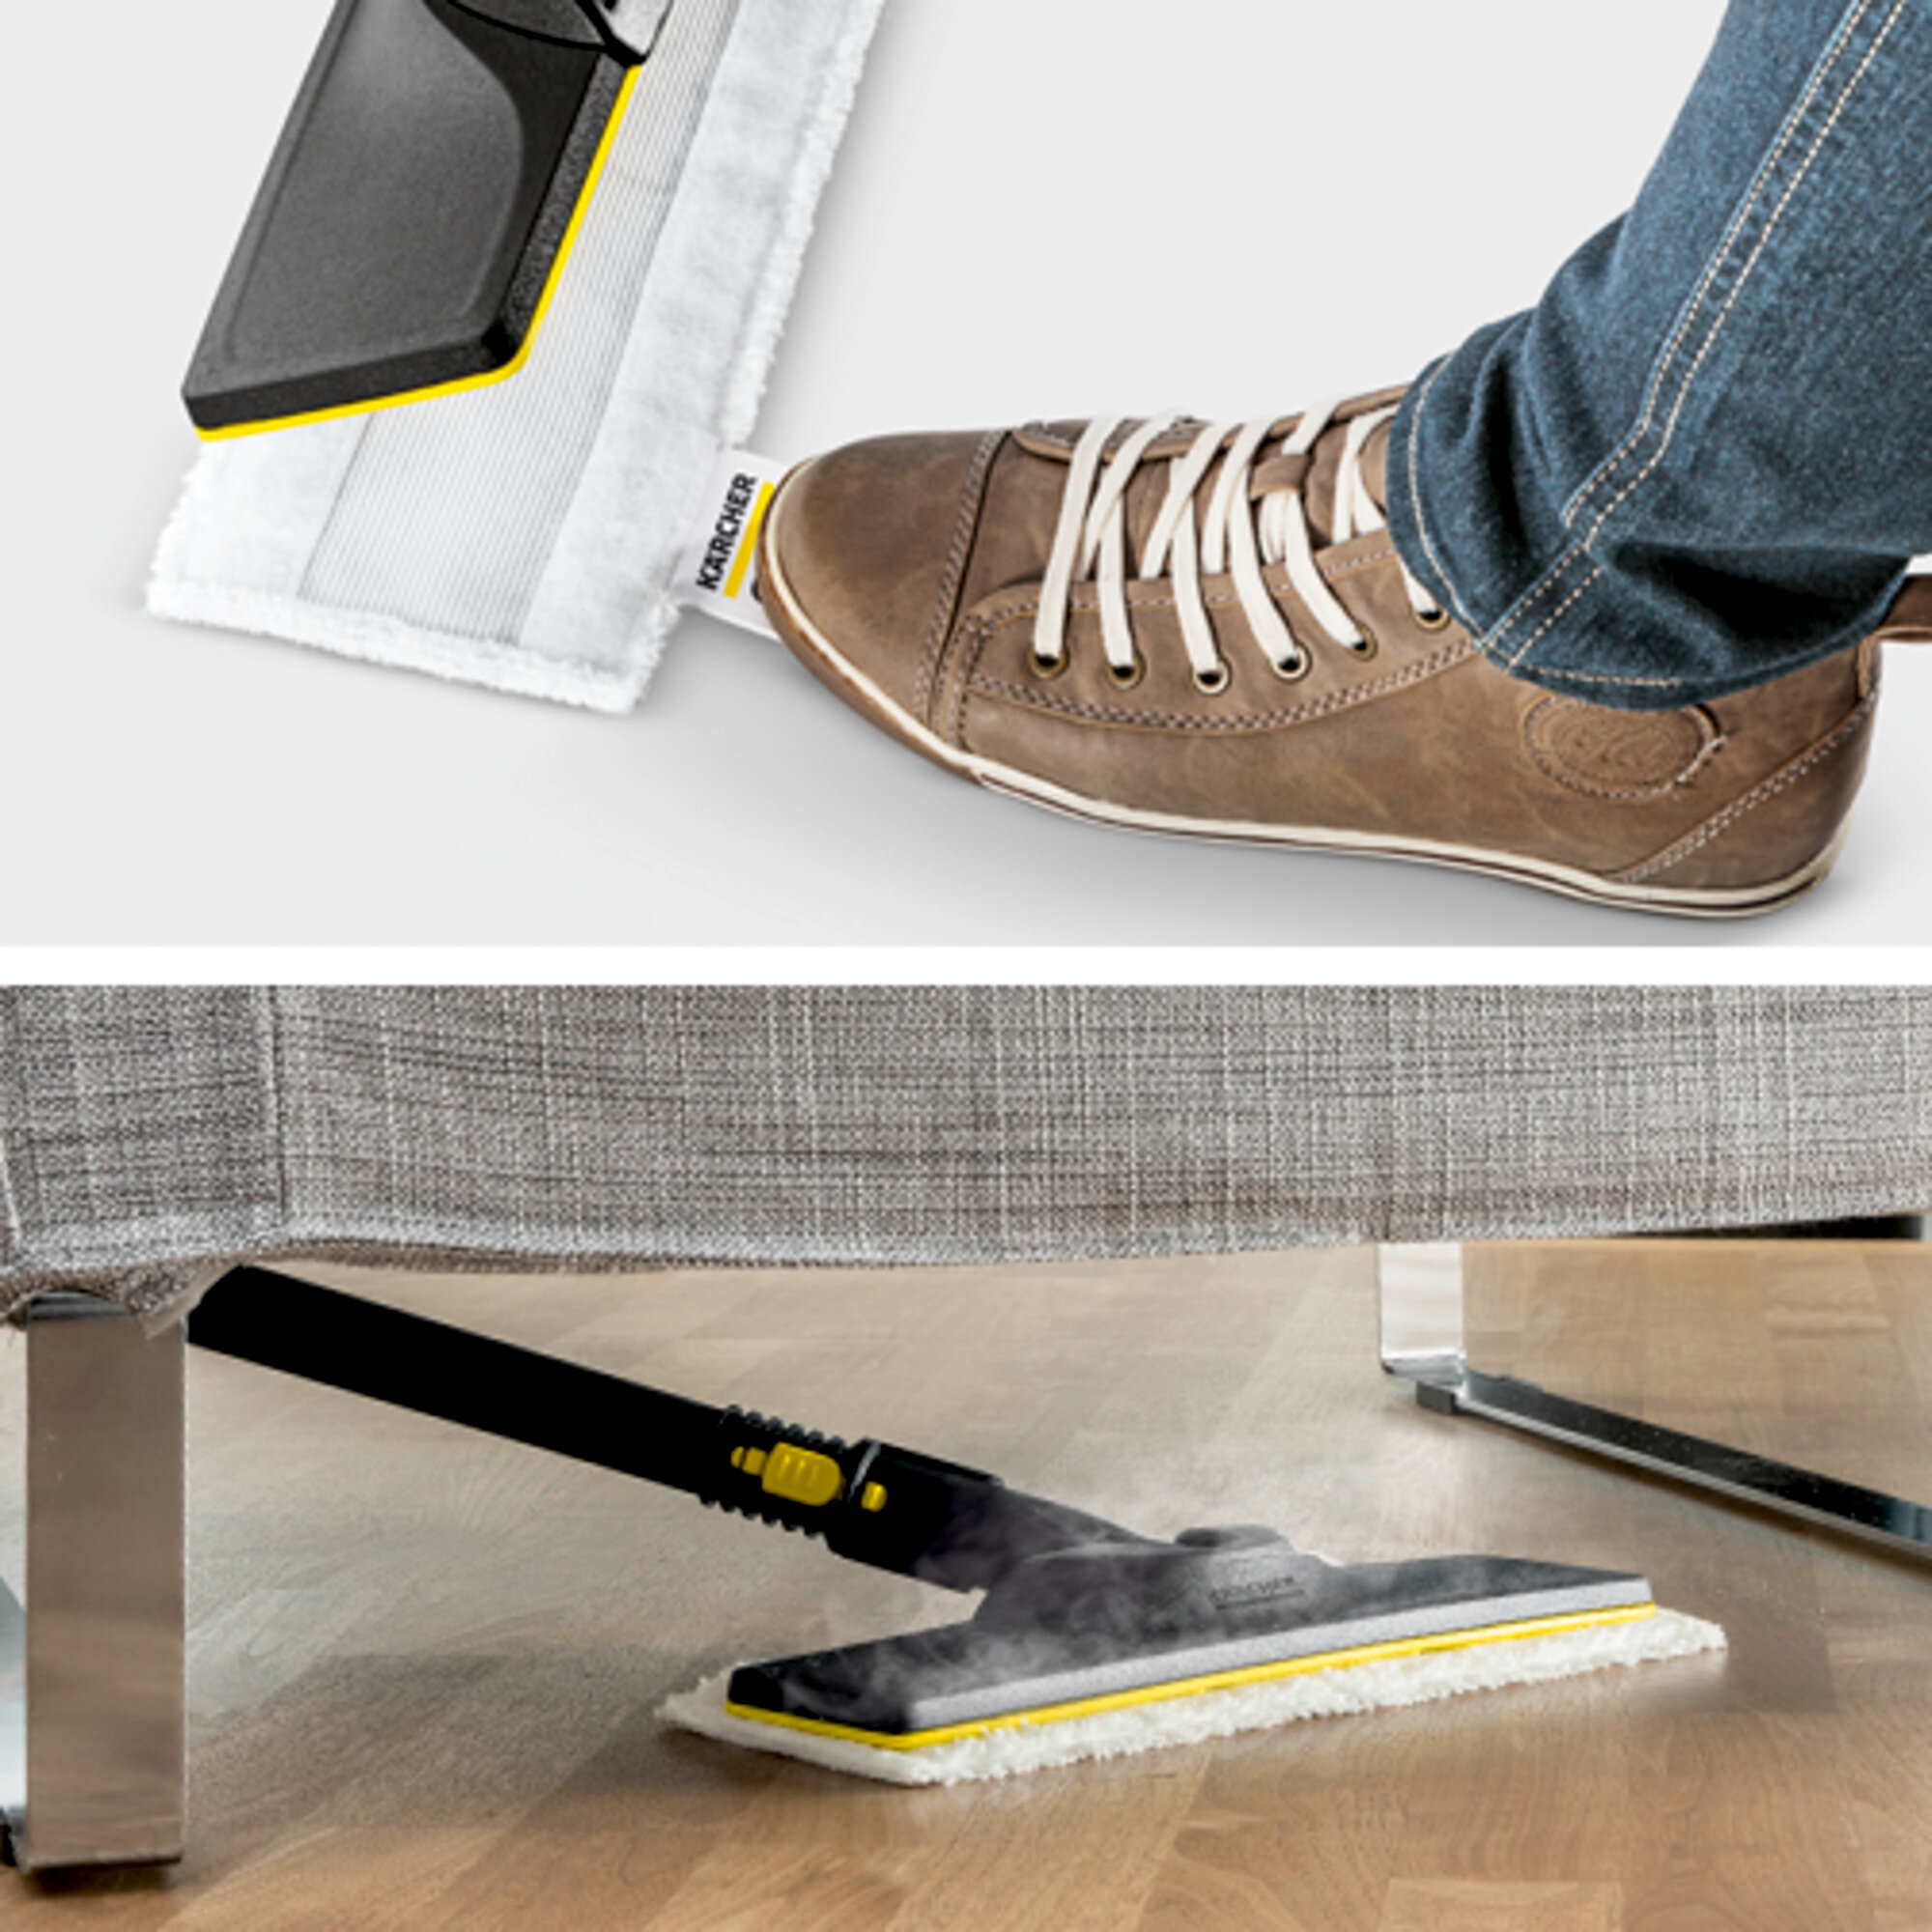 Parný čistič Parný čistič SC 4 EasyFix Iron: Súprava na čistenie podlahy EasyFix s flexibilným kĺbom na podlahovej hubici a pohodlným suchým zipsom na upevnenie utierky na podlahu